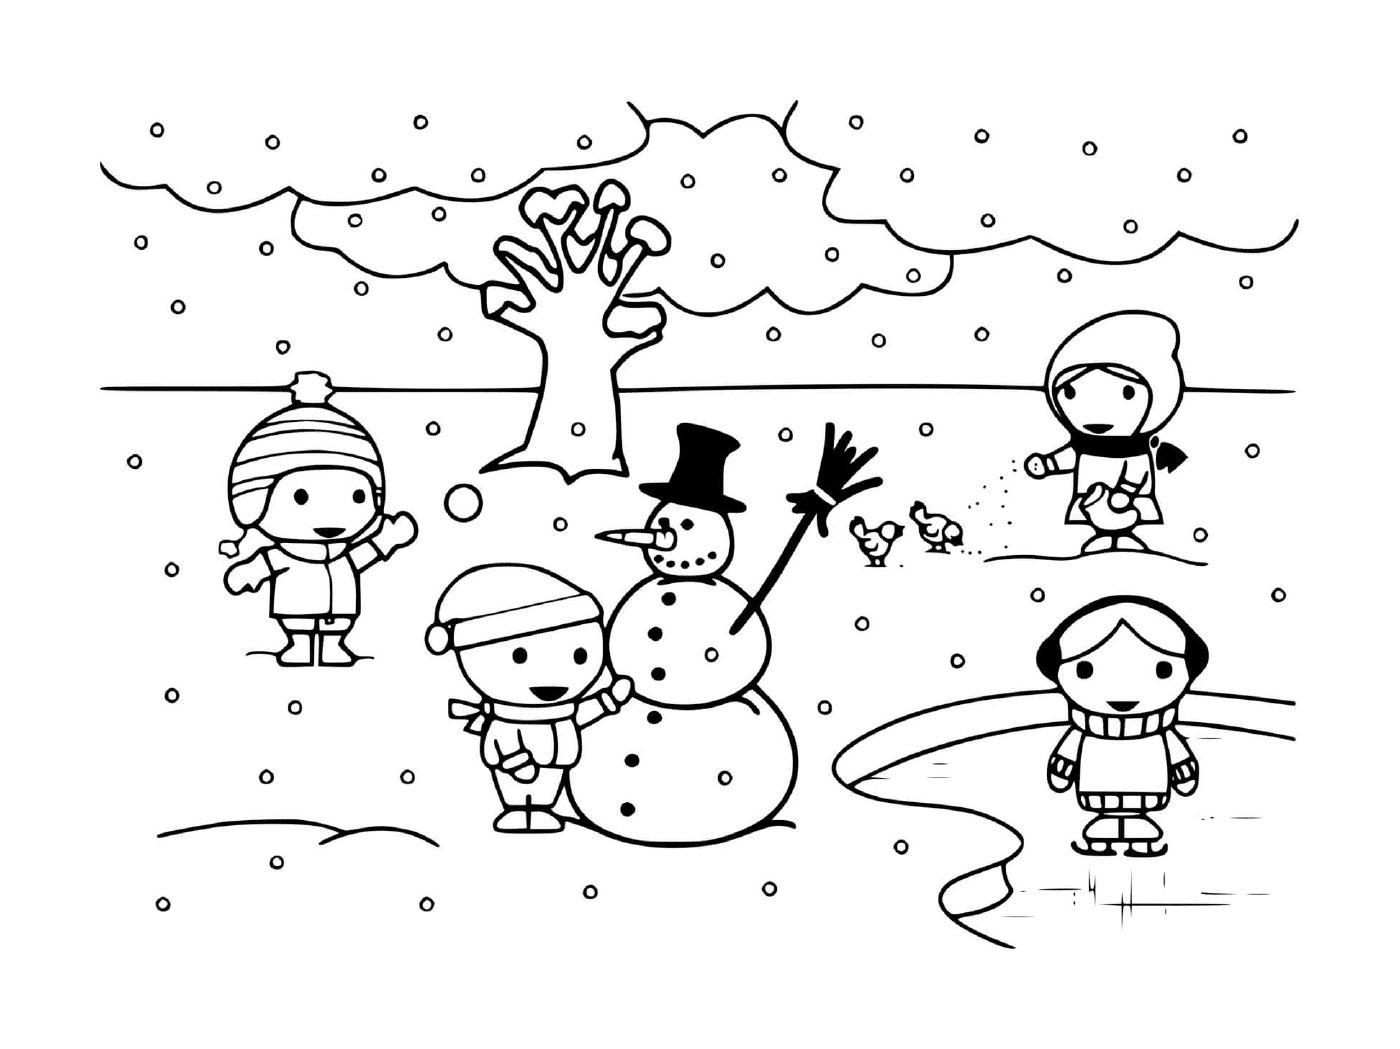  Kinder spielen im Winter mit Schnee 